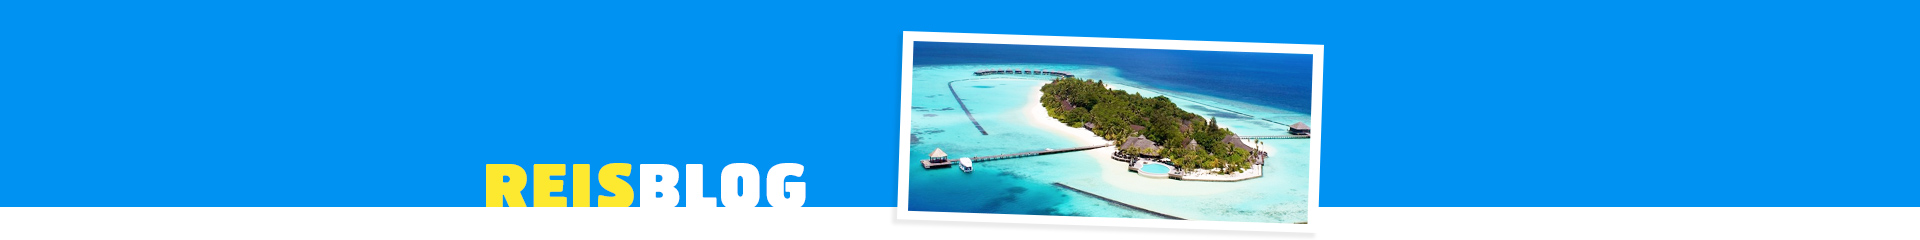 Eiland op de Malidiven met prachtig blauwe zee en groen eiland. 